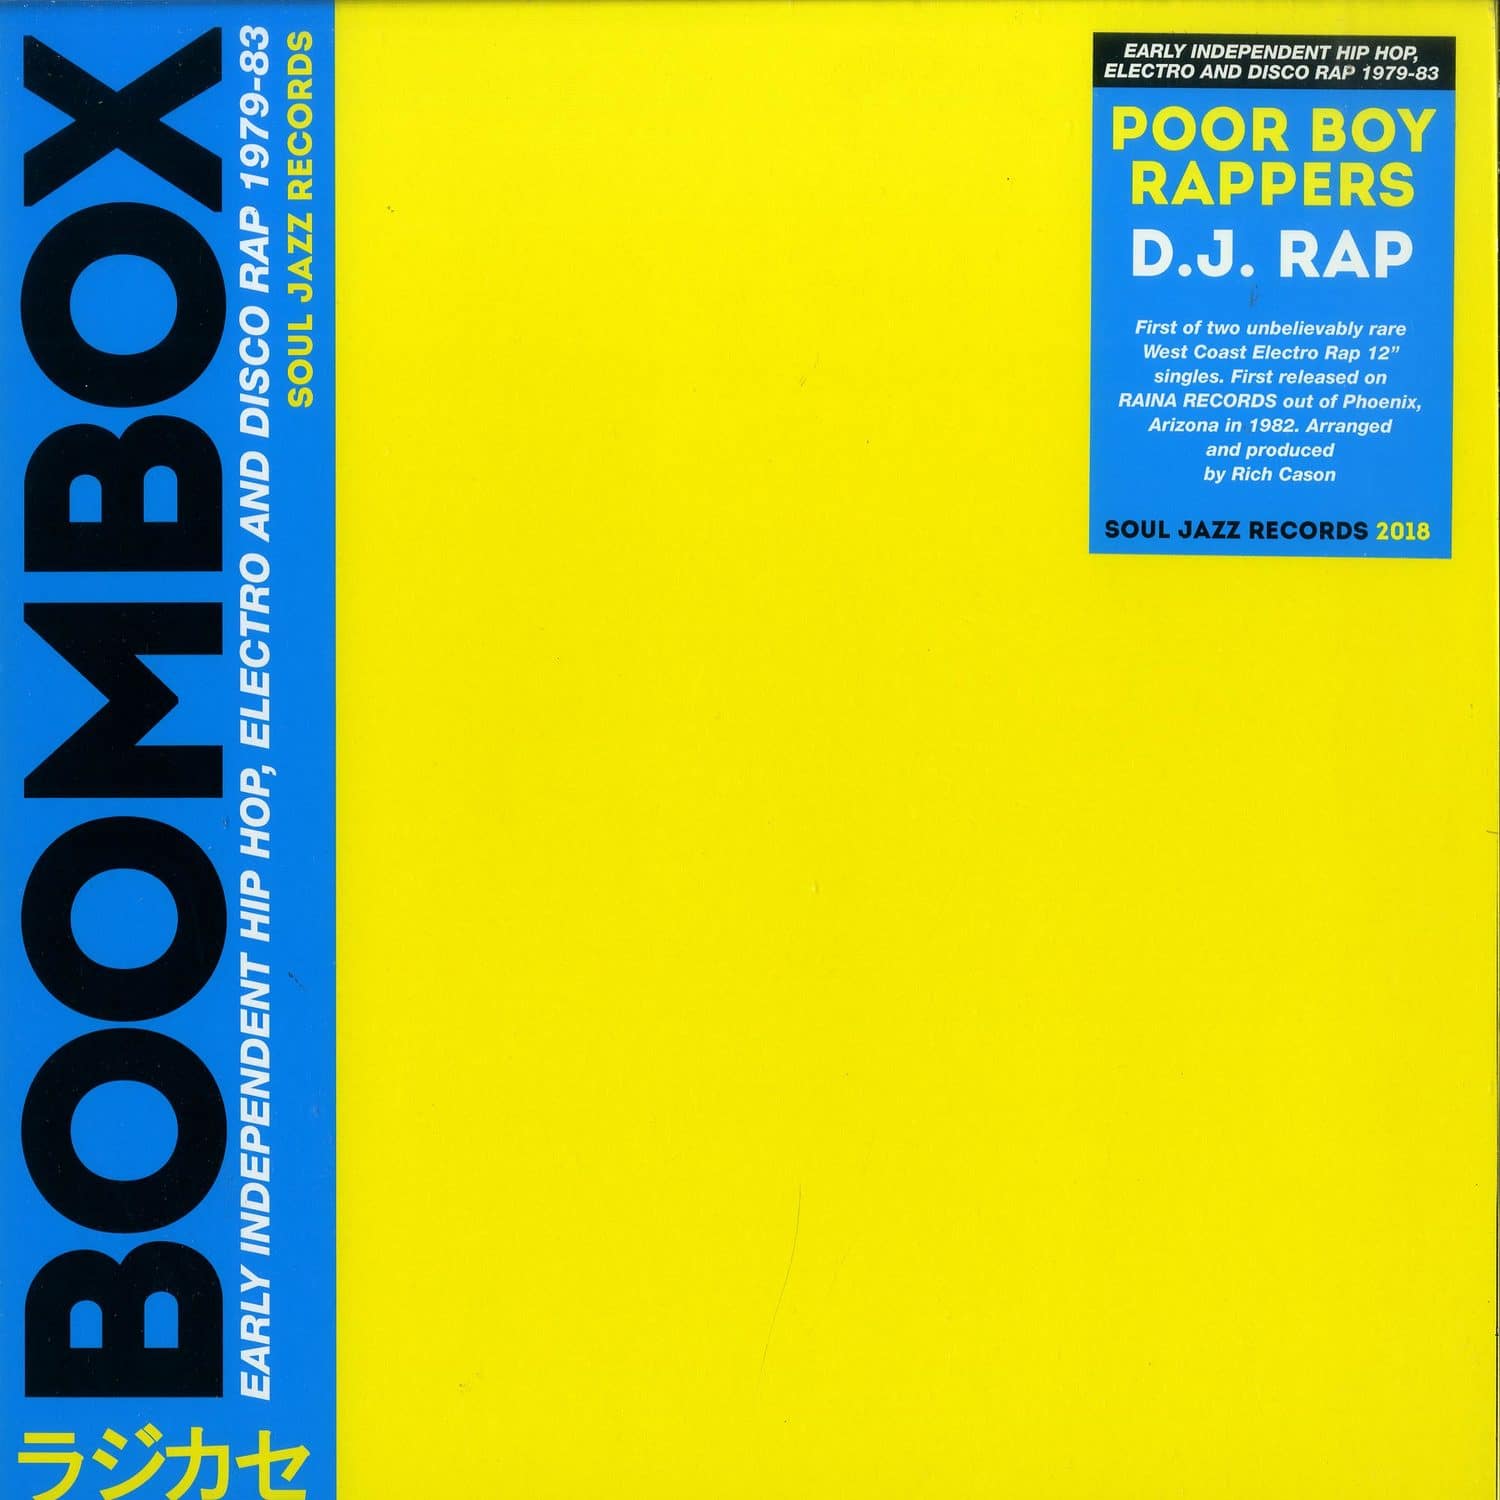 Poor Boy Rappers - THE DJ RAP